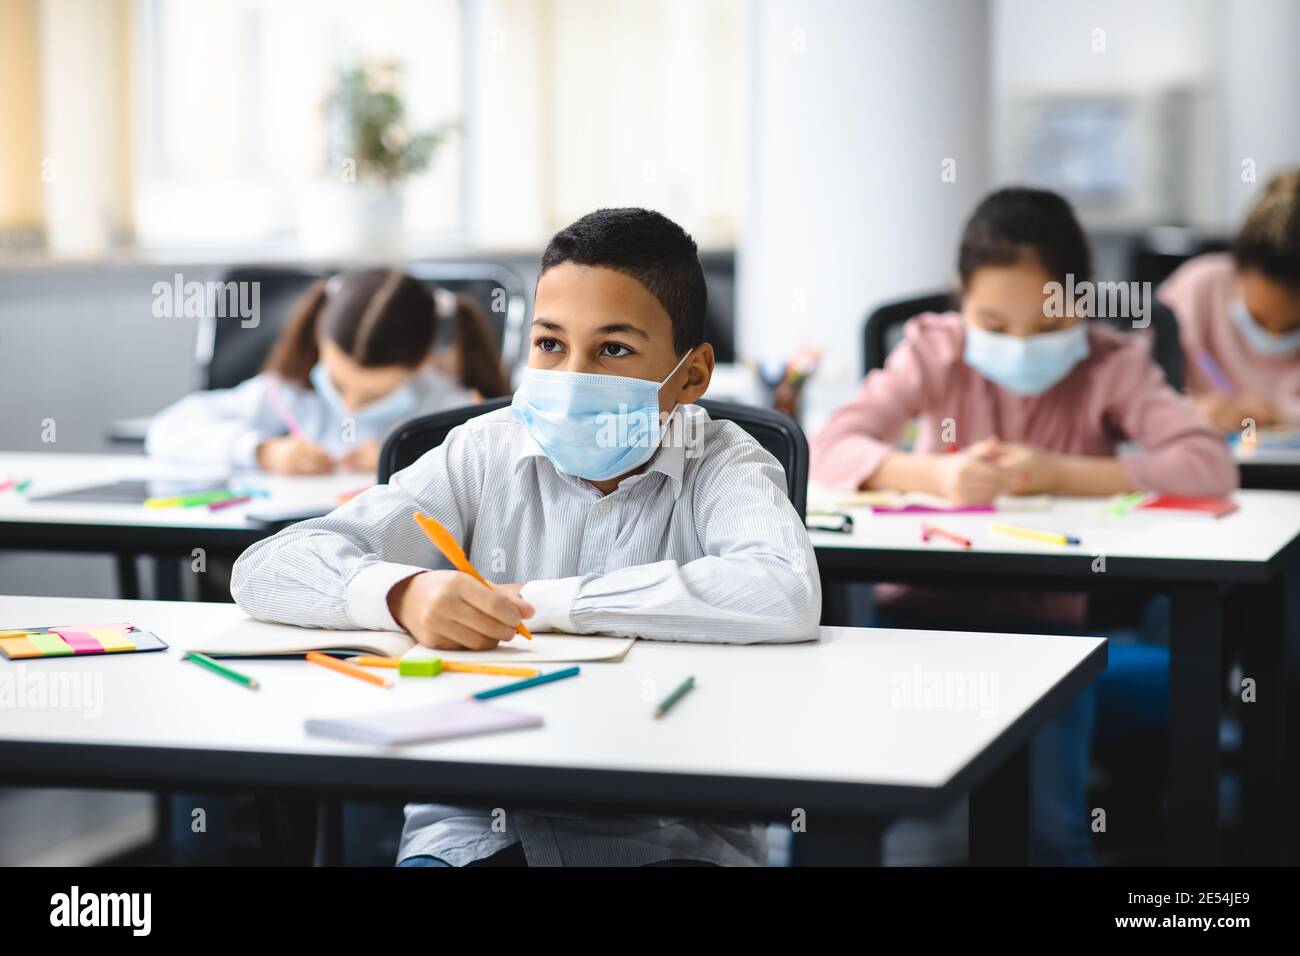 Junge in Maske sitzt am Schreibtisch im Klassenzimmer Stockfoto